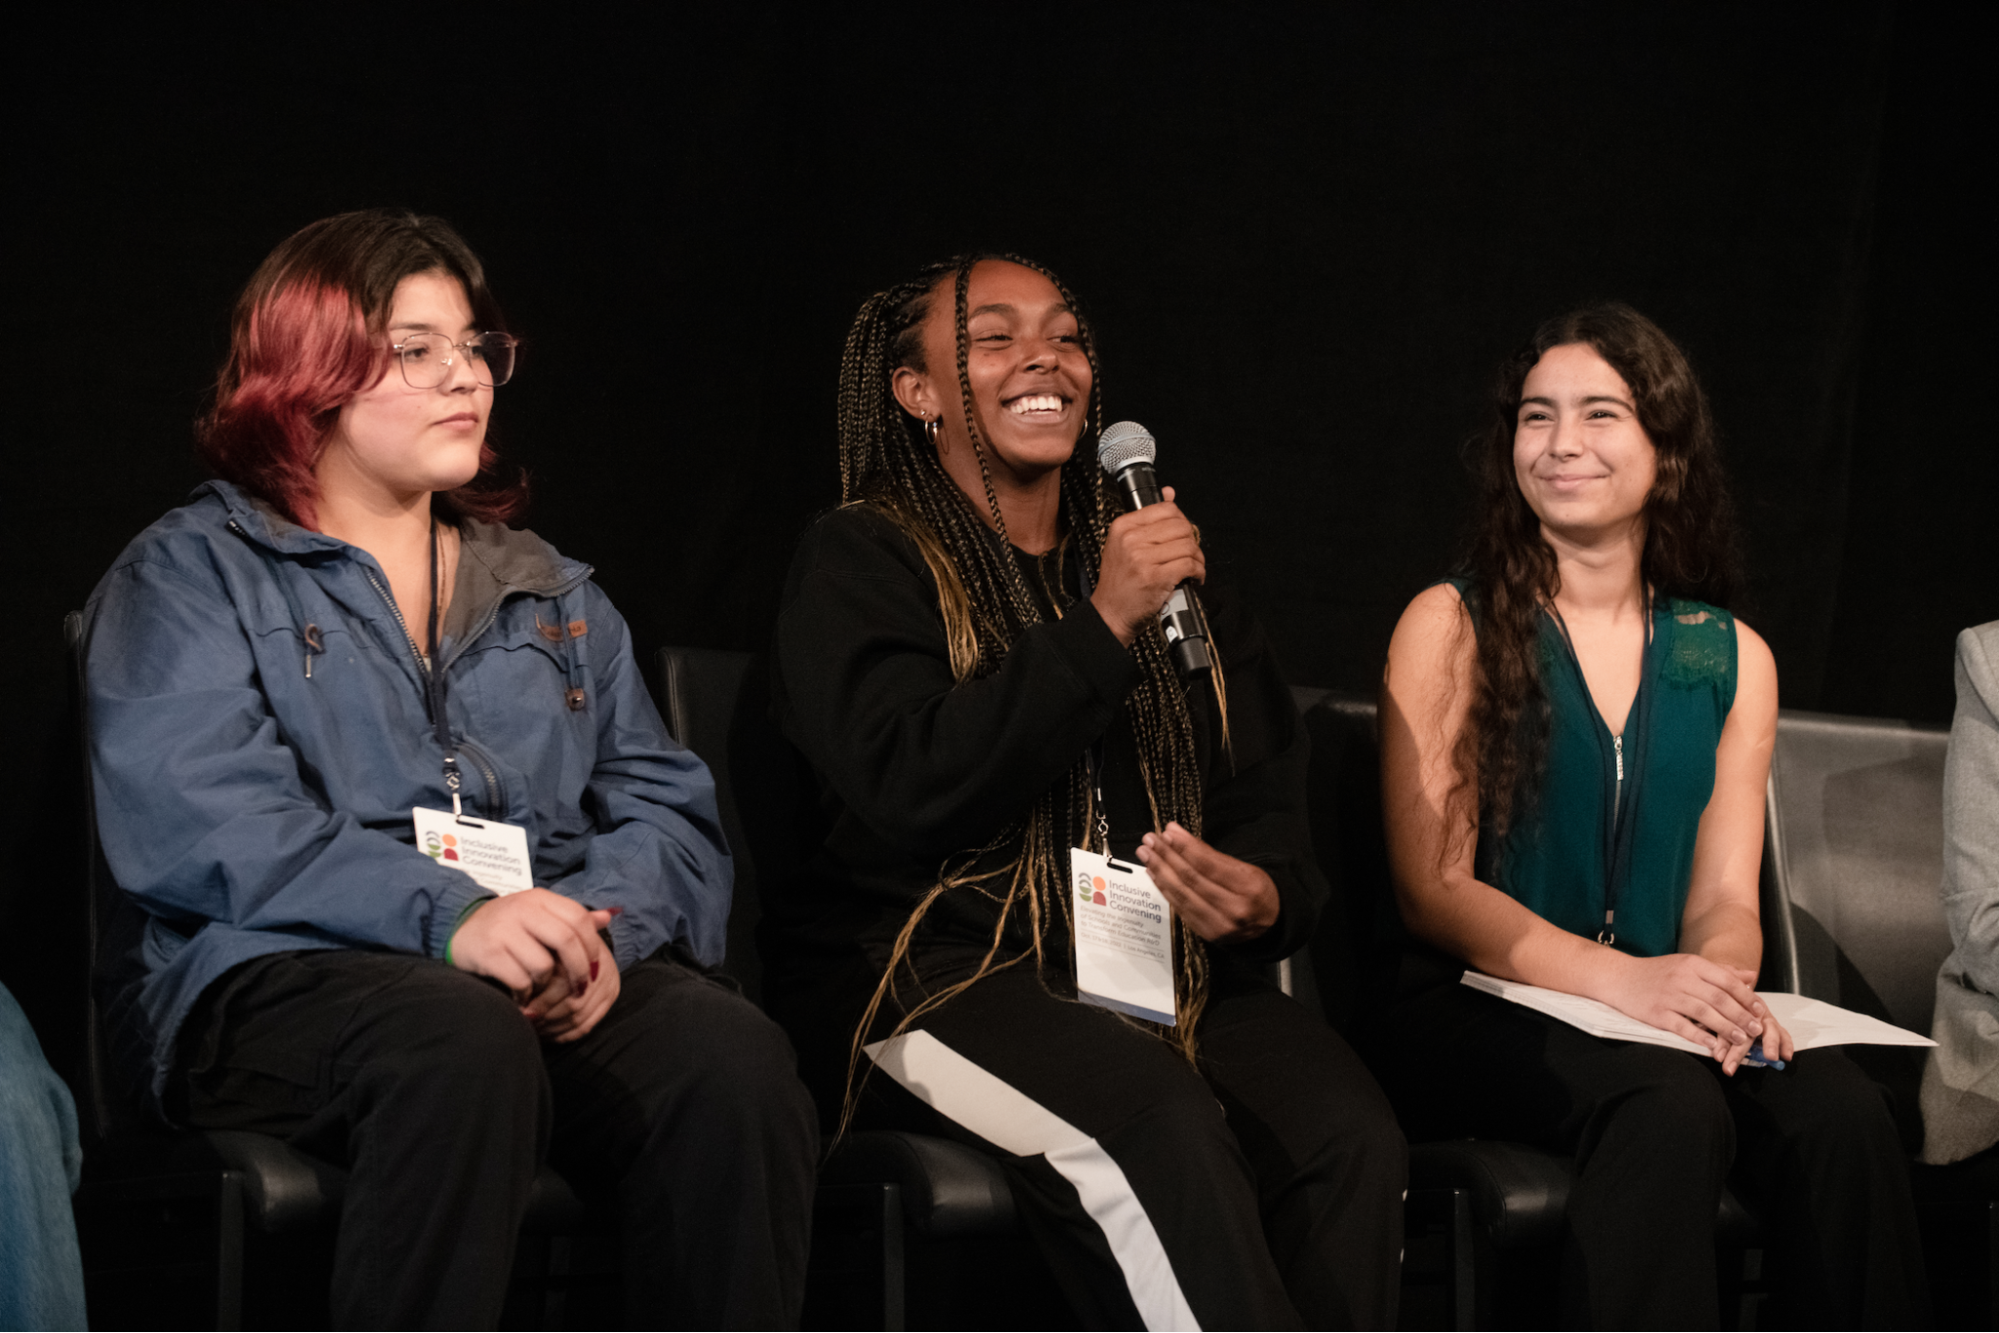 Three students speak on a panel on stage.